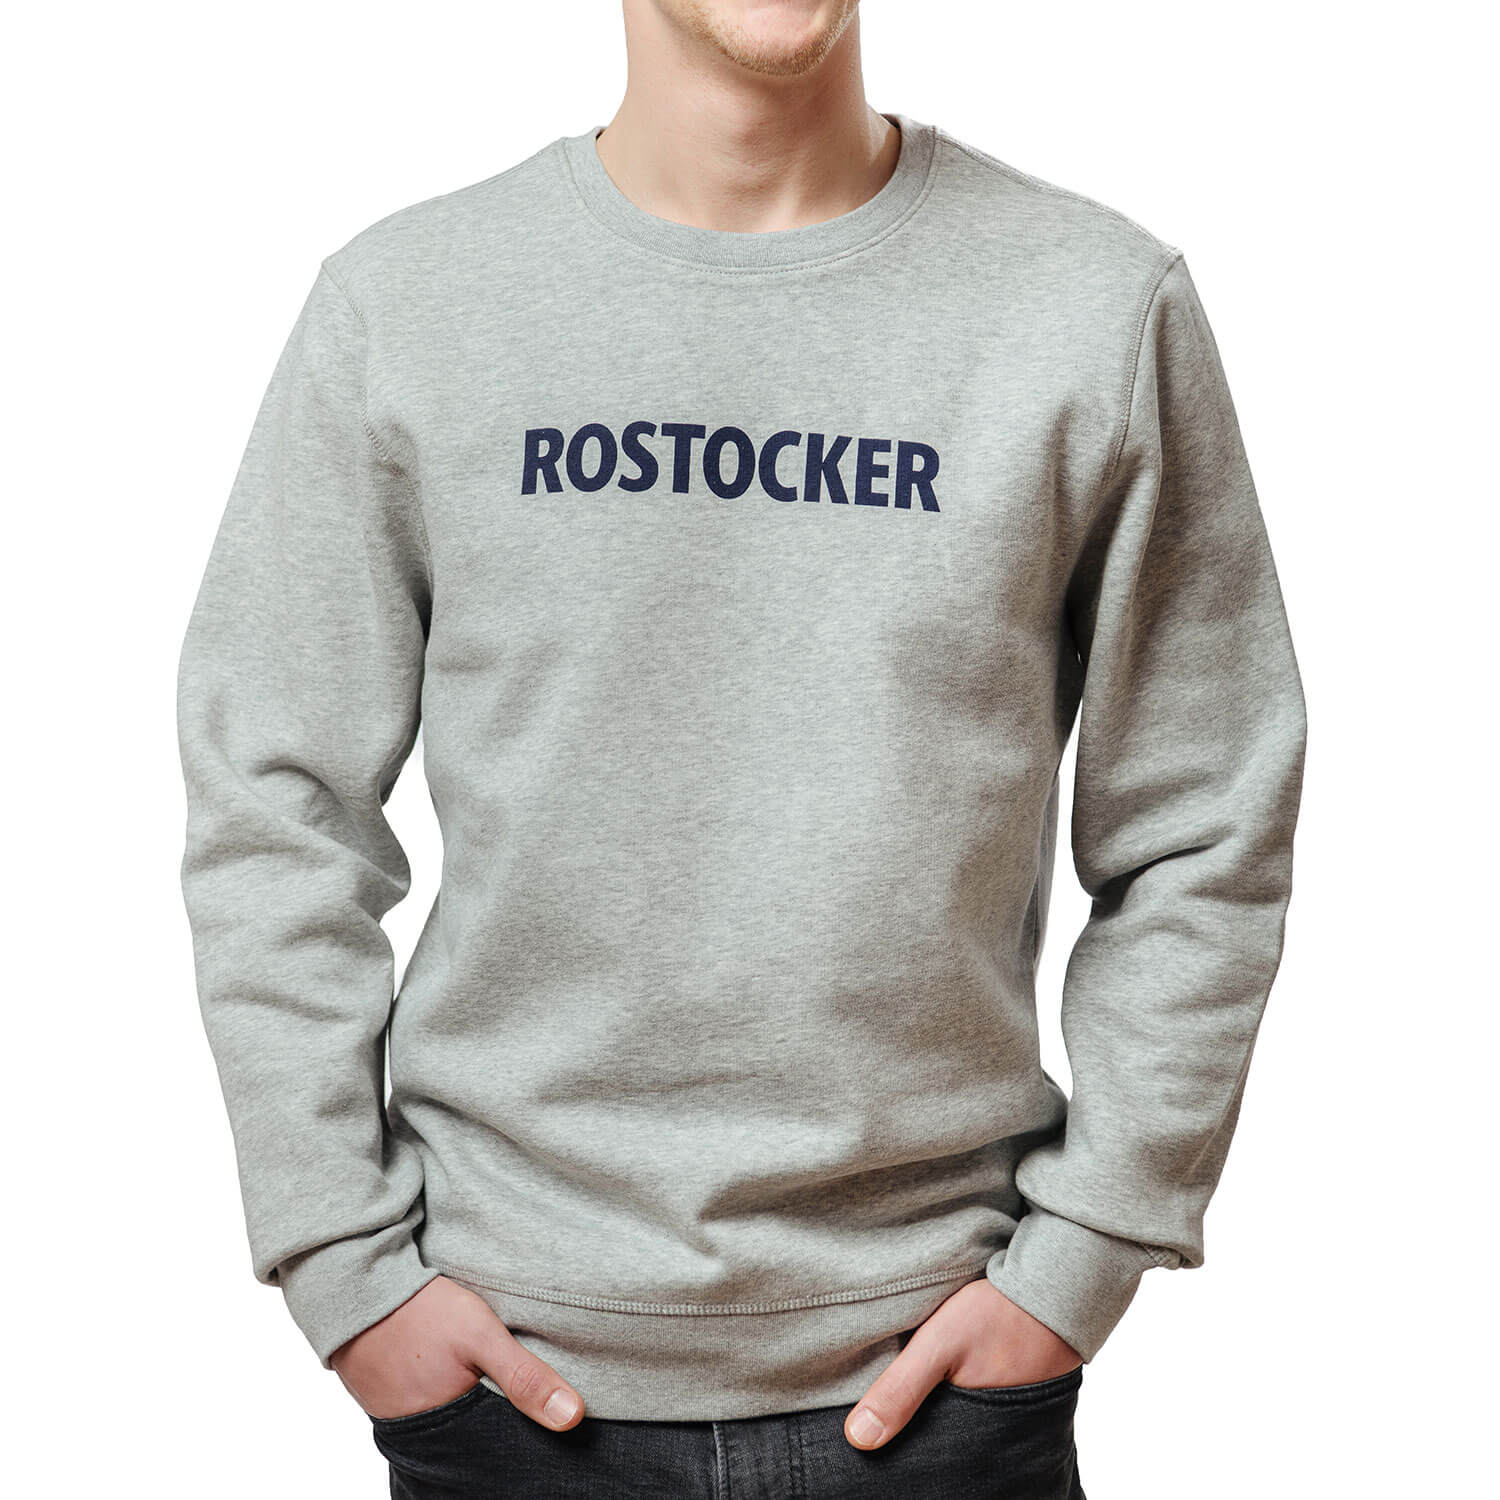 Rostocker Sweatshirt "Maschinentelegraph", Gr. S